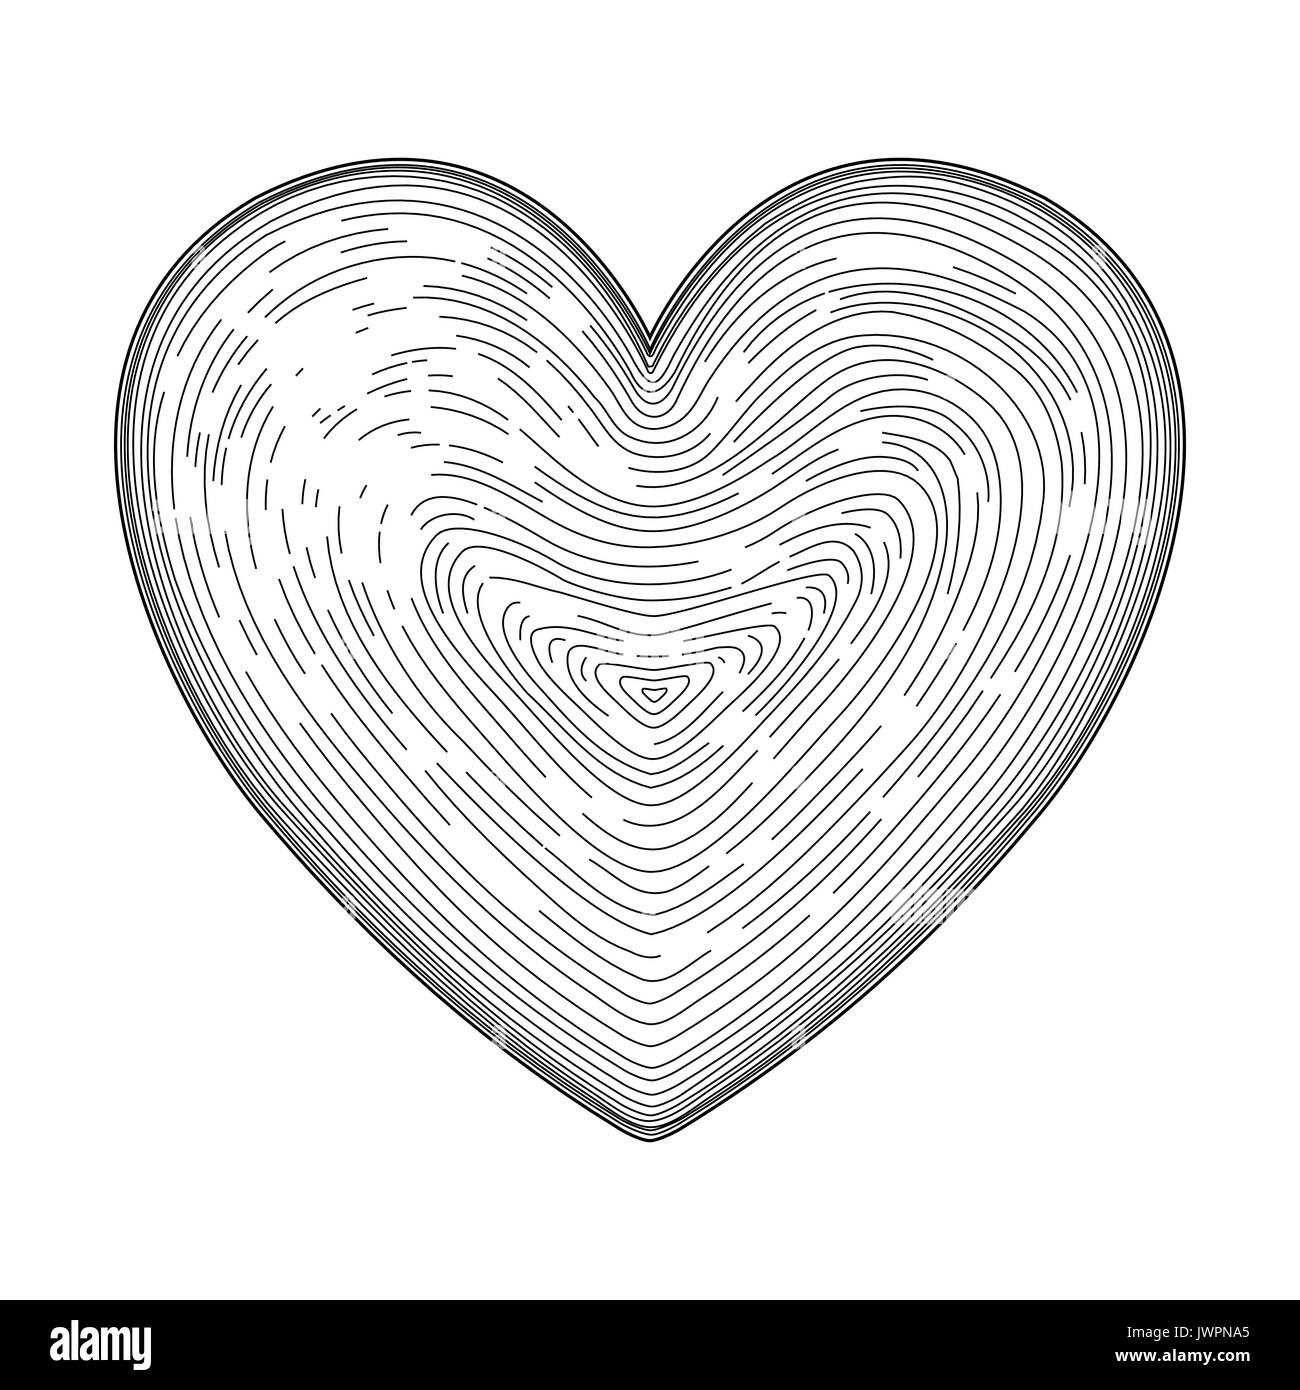 Dibujado a mano el símbolo del corazón como la impresión de huellas dactilares. Elemento de diseño para el día de San Valentín. Arte lineal negro del tatuaje hermoso lindo elegancia decorativa y de Ilustración del Vector